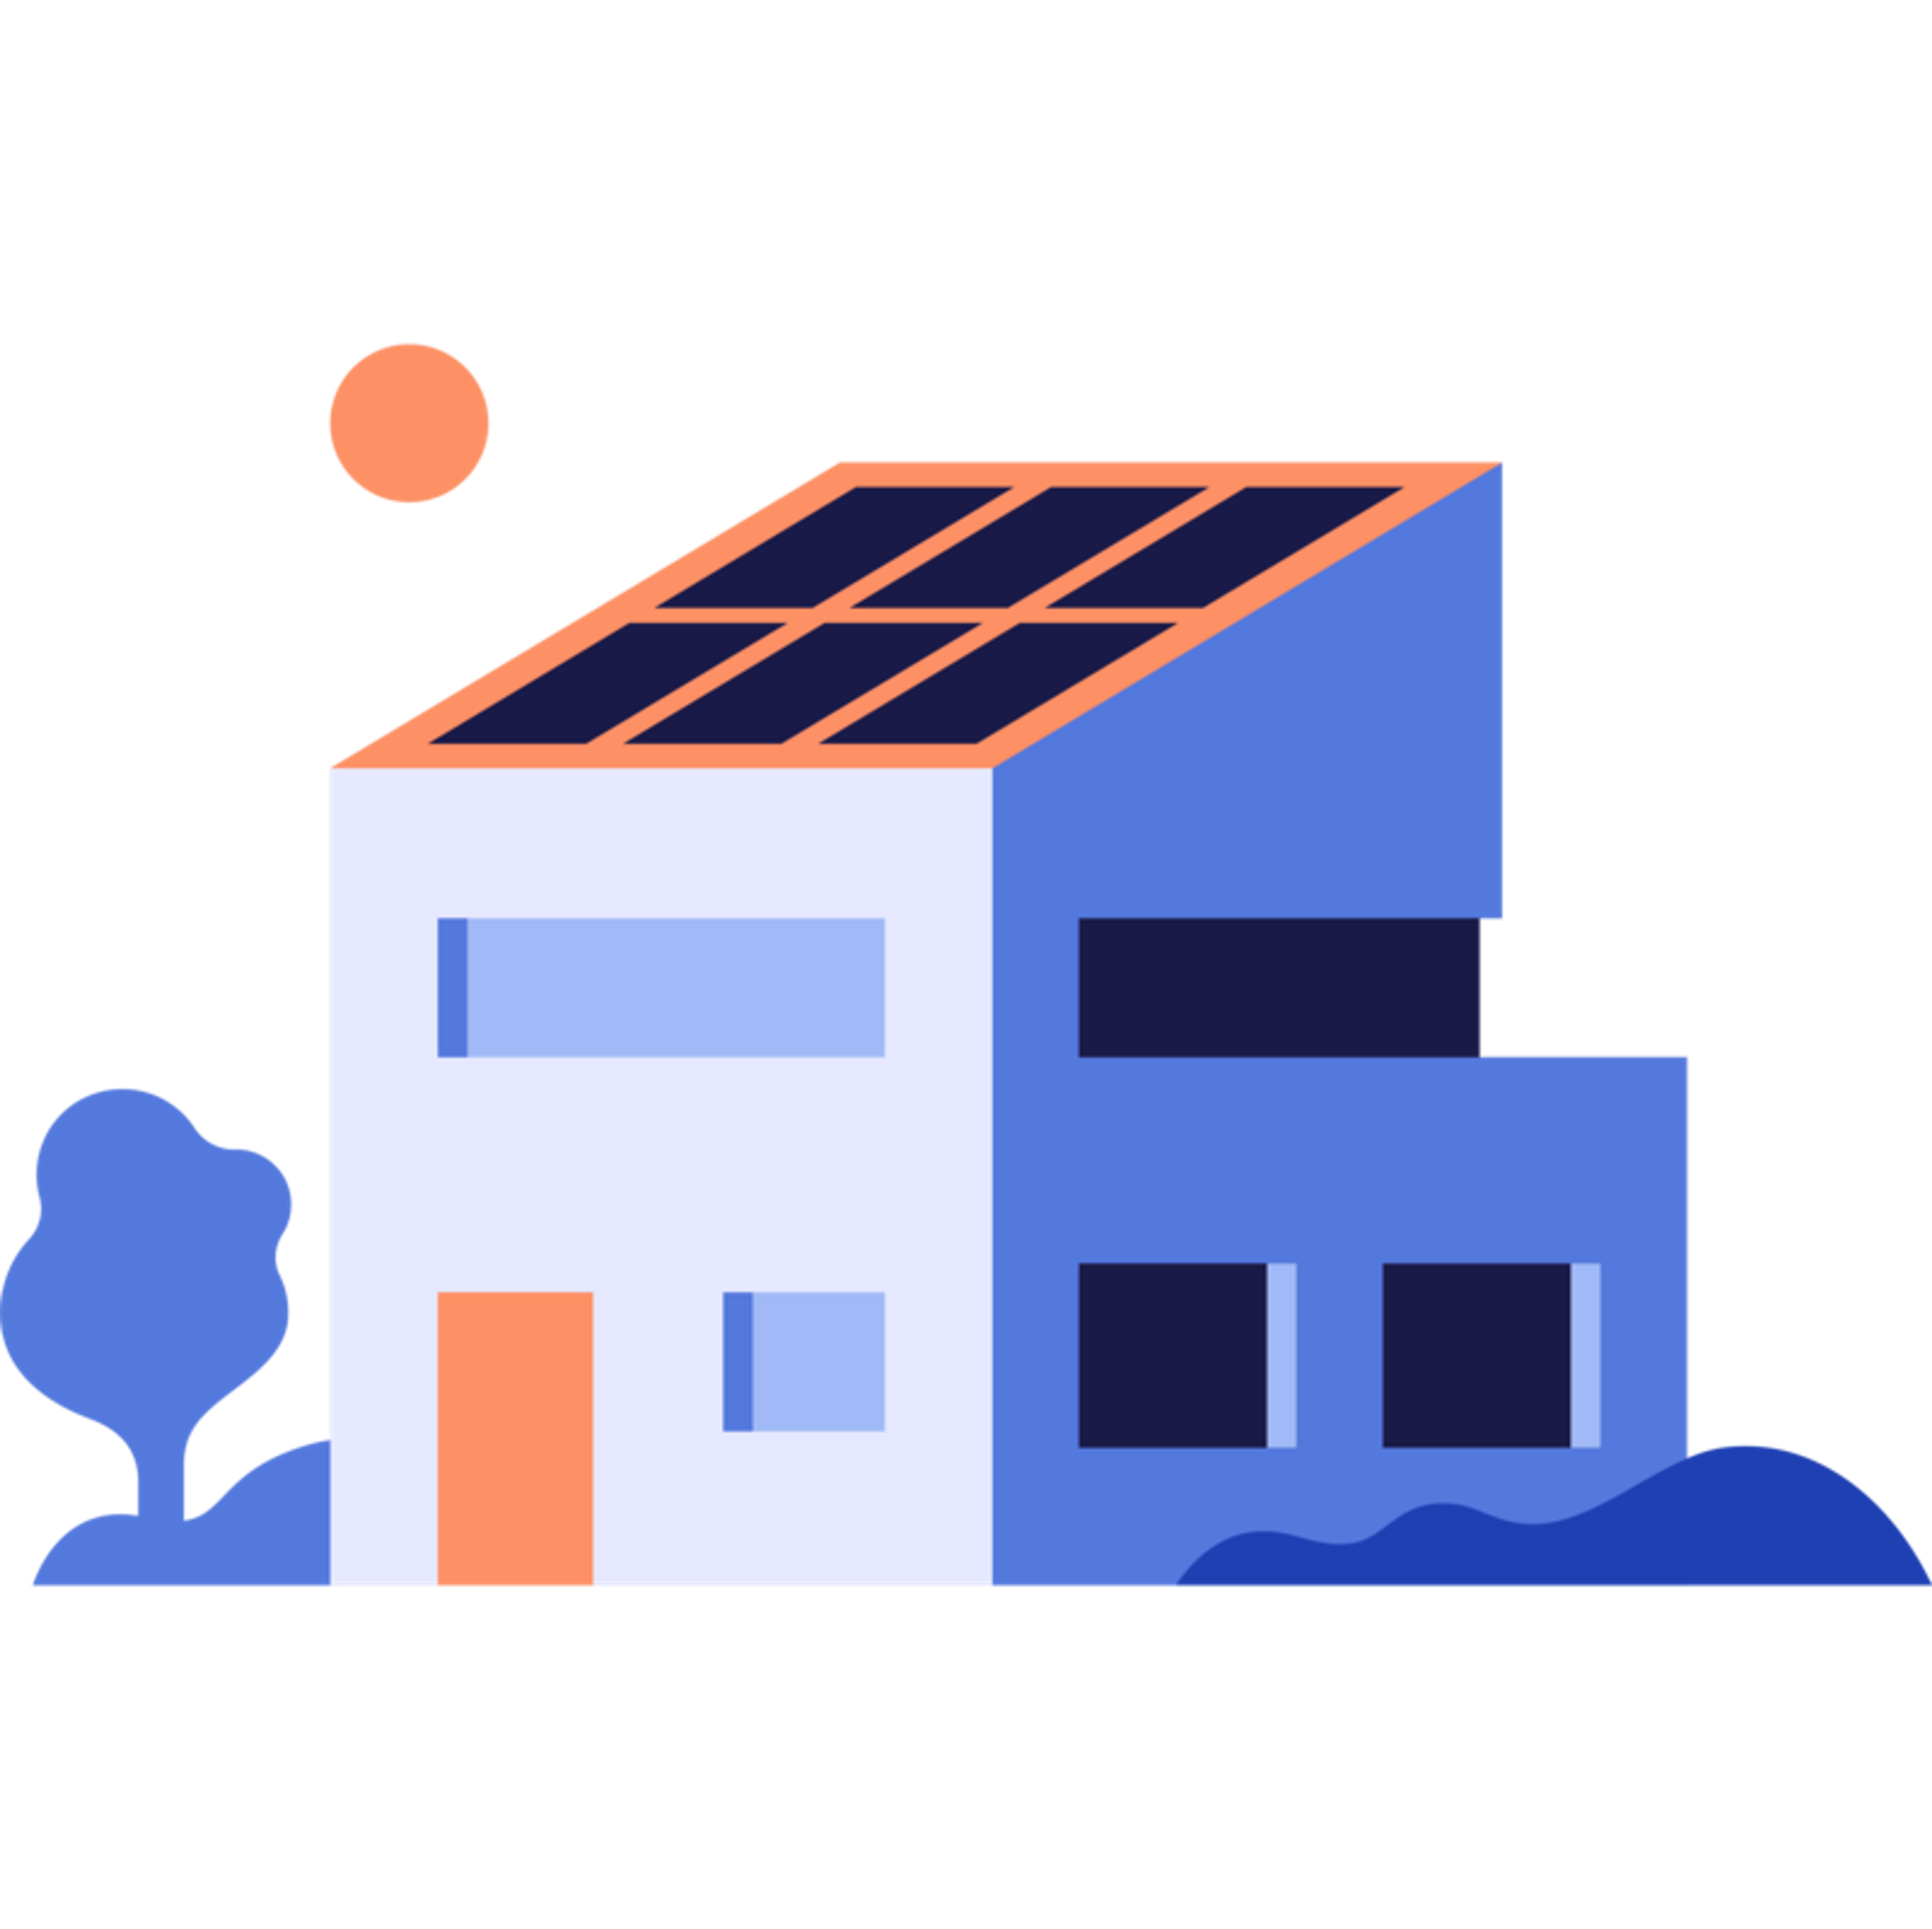 Le photovoltaïque, c'est la durabilité